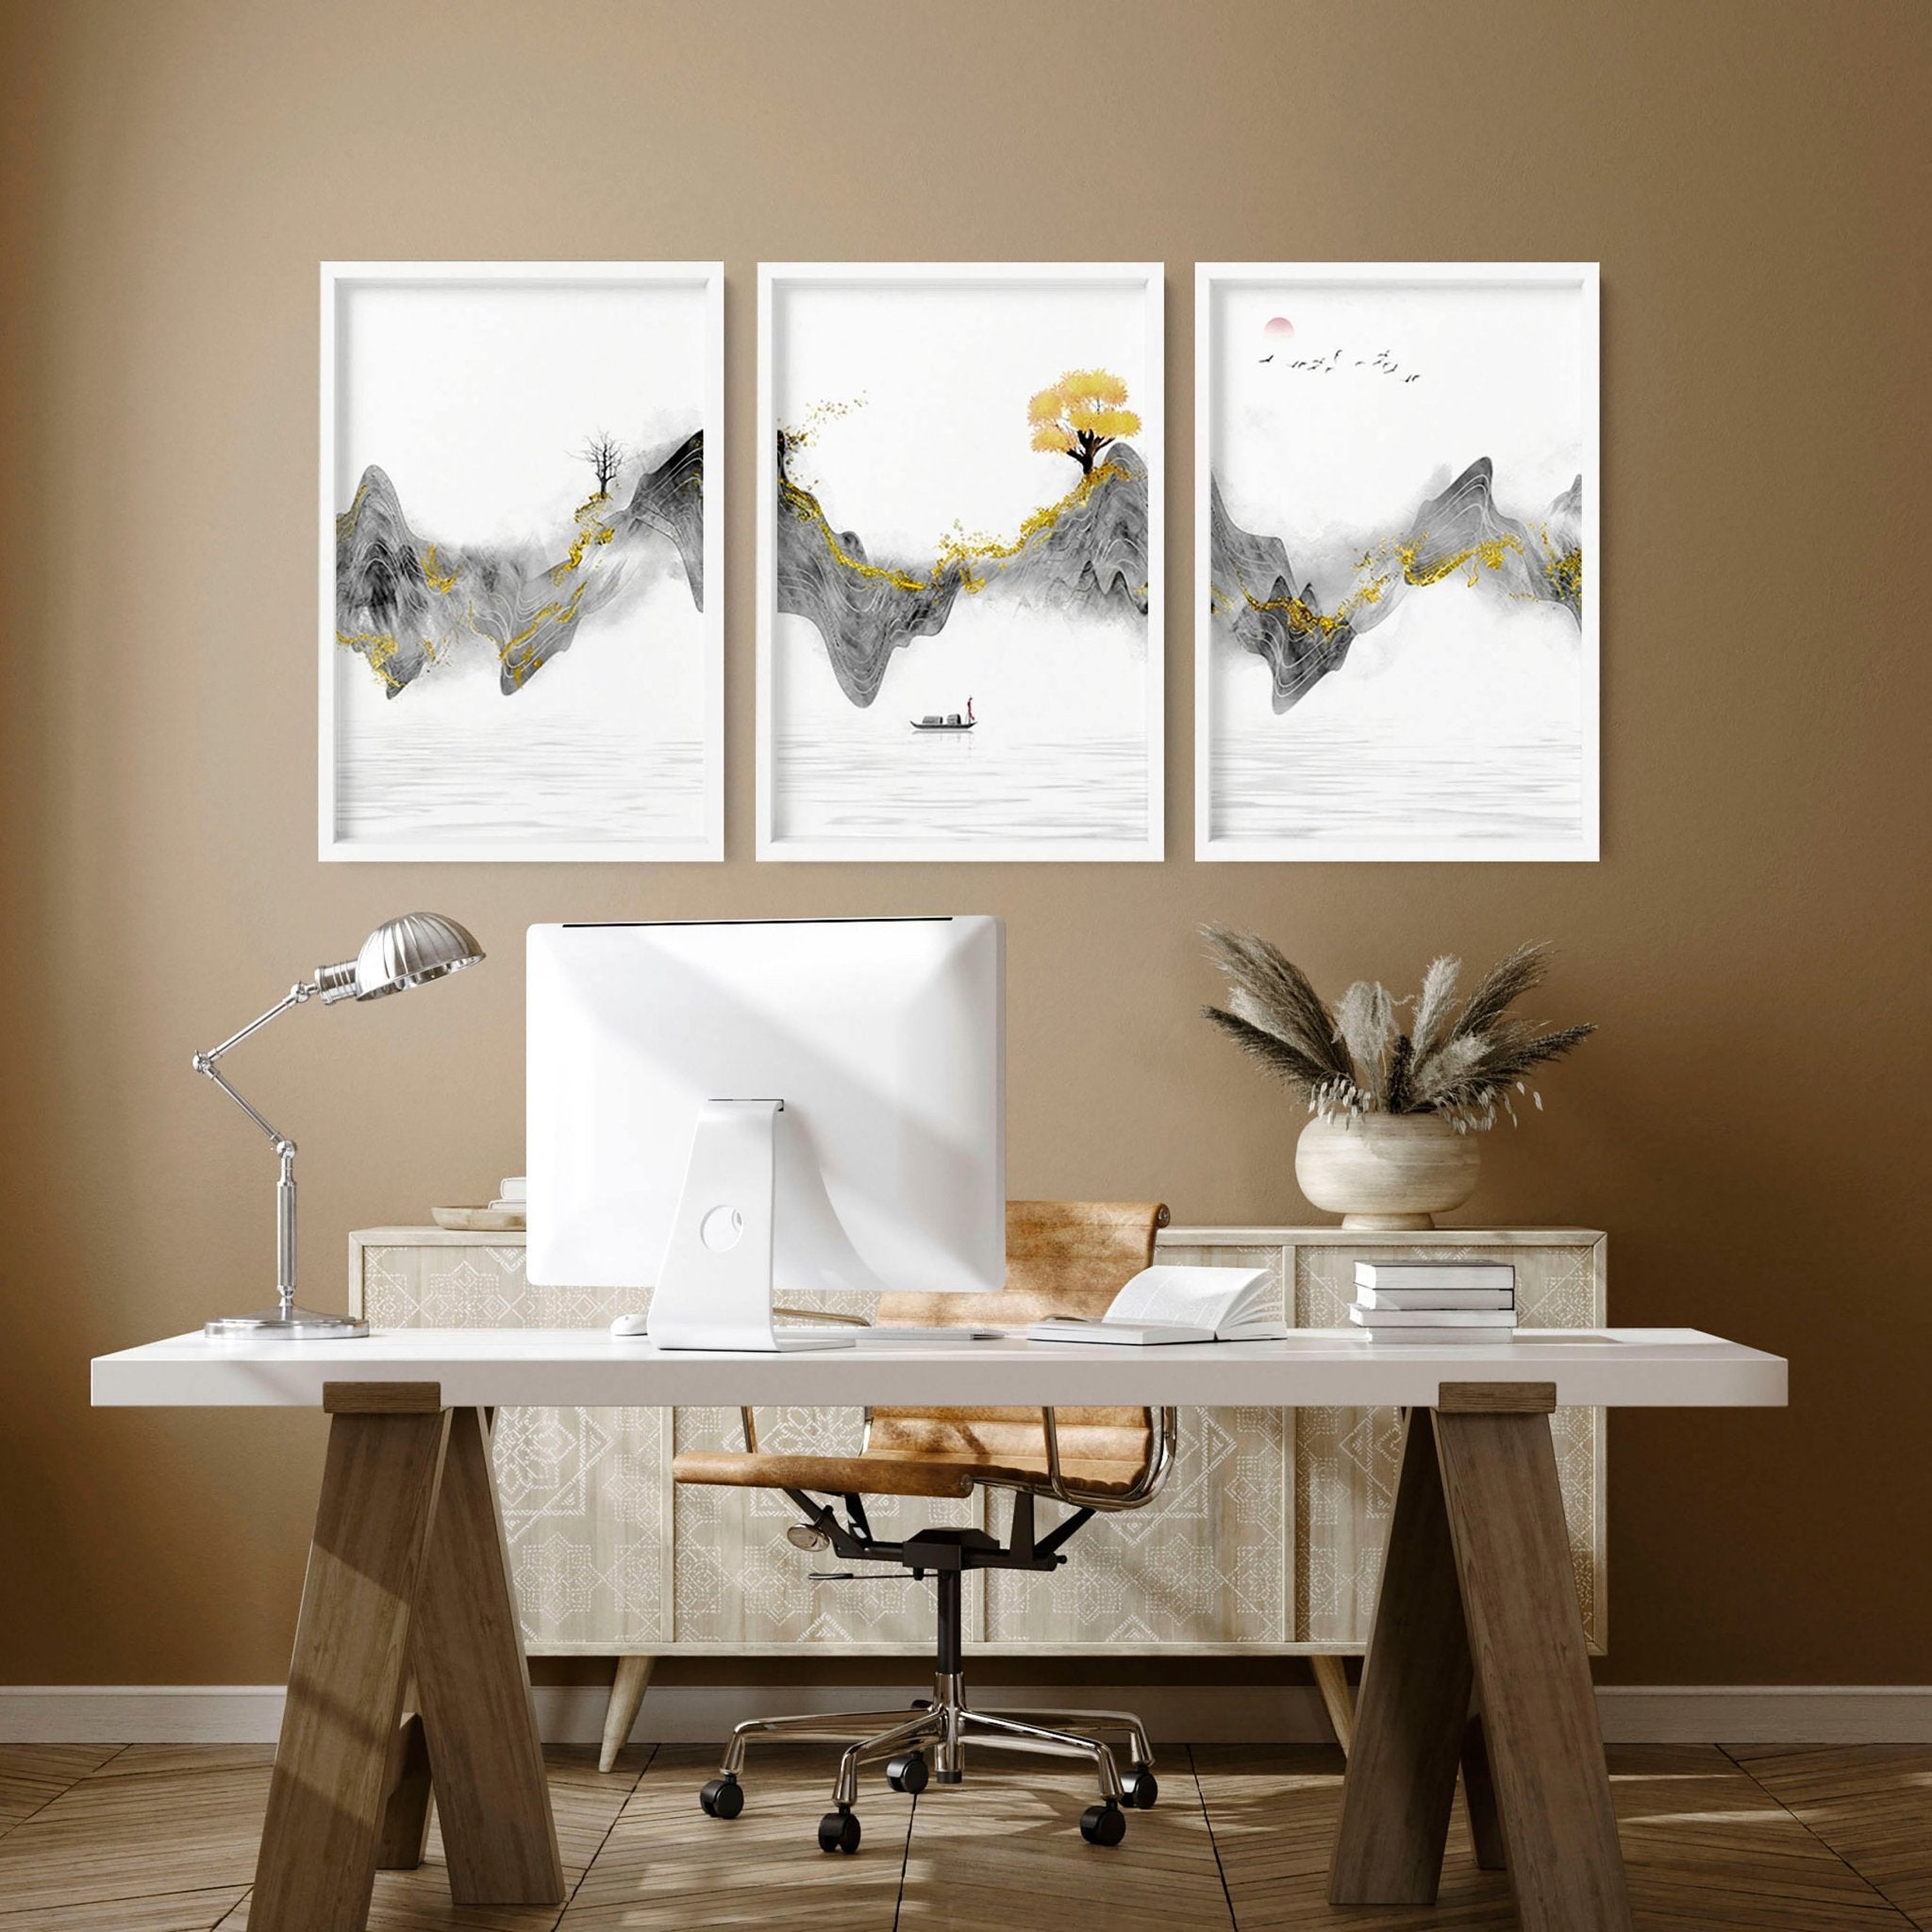 Juego Japandi de 3 impresiones de arte de pared enmarcadas para una decoración de escritorio de oficina relajante, juego de impresión de arte de pared de galería de puesta de sol de paisaje japonés gris y dorado